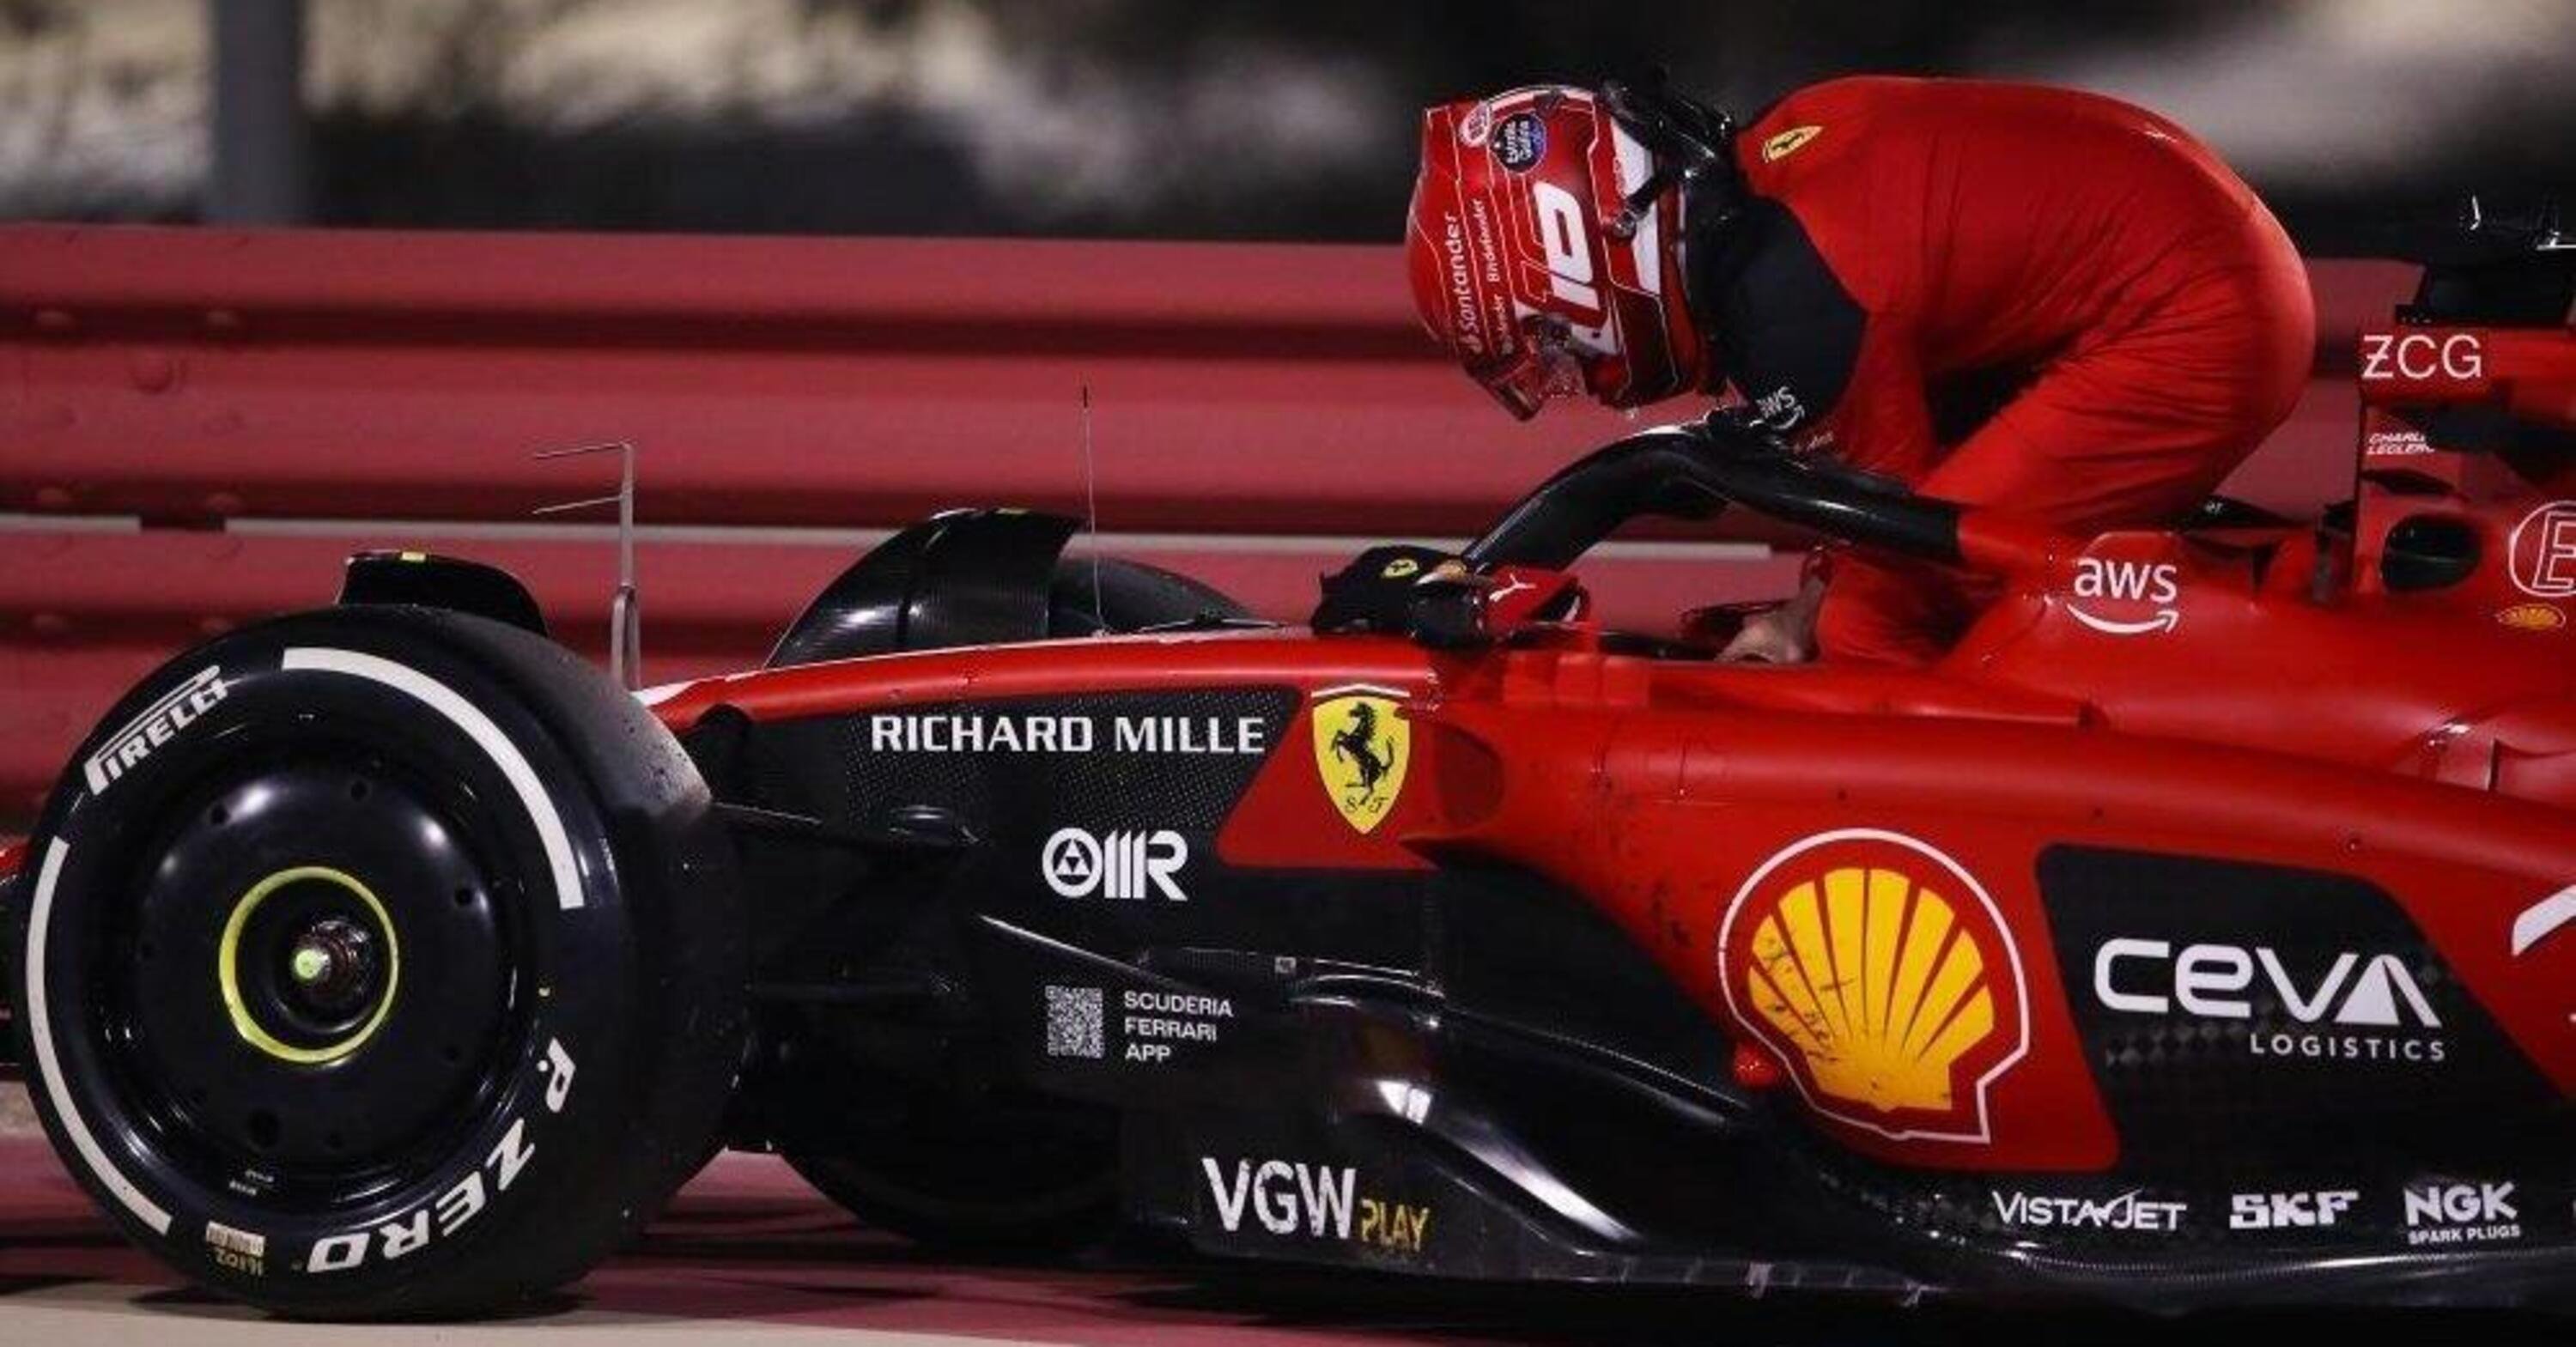 F1, GP Arabia Saudita 2023, Ferrari indecisa ma &ldquo;il passo &egrave; migliore del Bahrain&rdquo;, assicura Leclerc